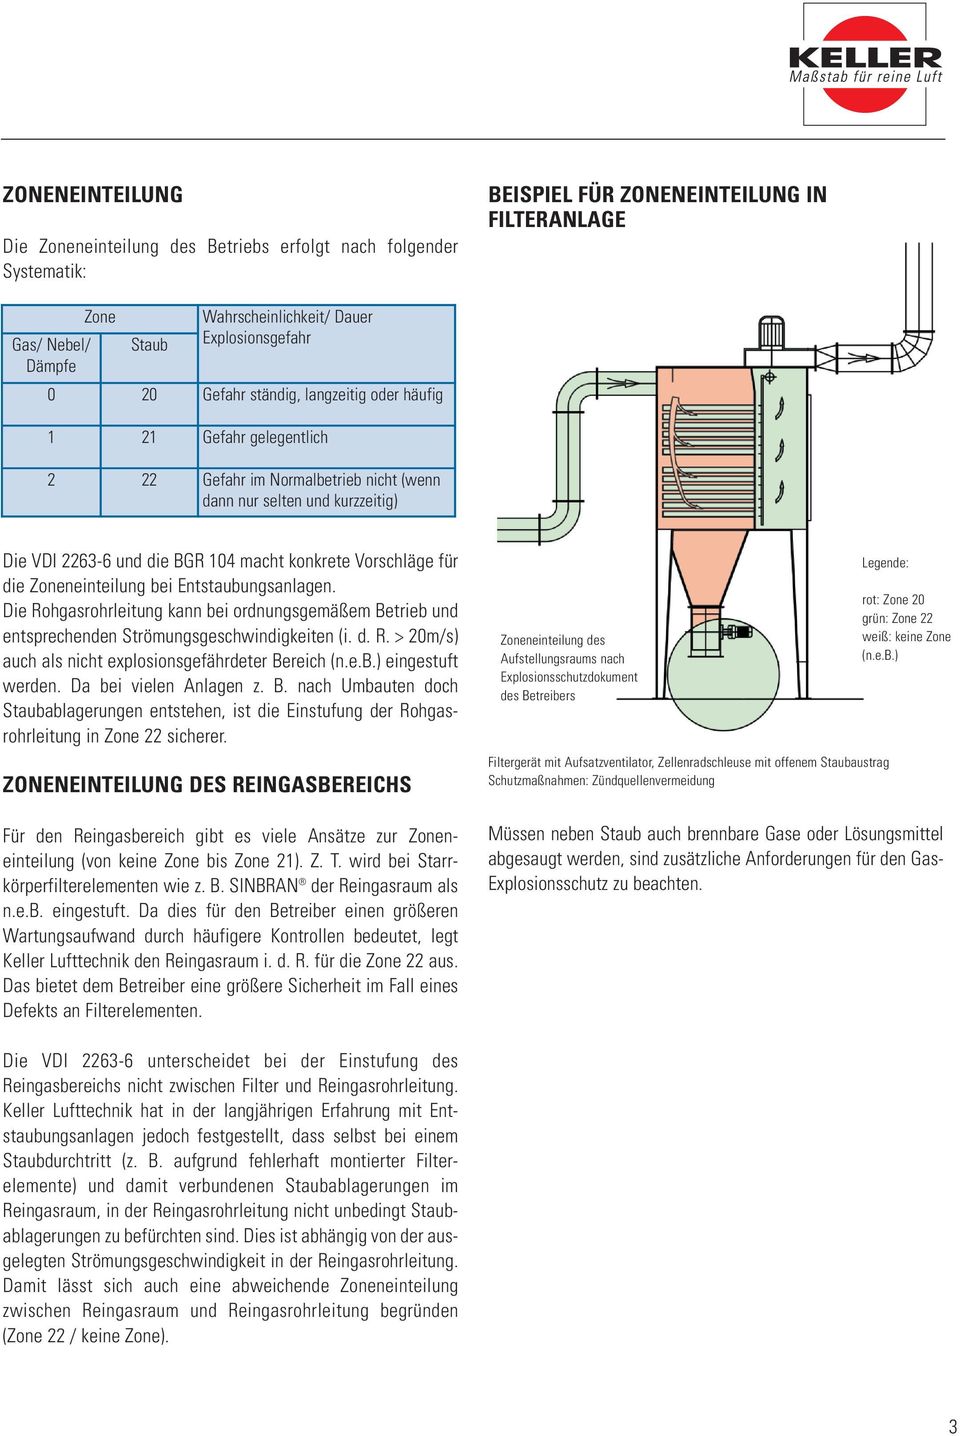 Vorschläge für die Zoneneinteilung bei Entstaubungsanlagen. Die Rohgasrohrleitung kann bei ordnungsgemäßem Betrieb und entsprechenden Strömungsgeschwindigkeiten (i. d. R. > 20m/s) auch als nicht explosionsgefährdeter Bereich (n.